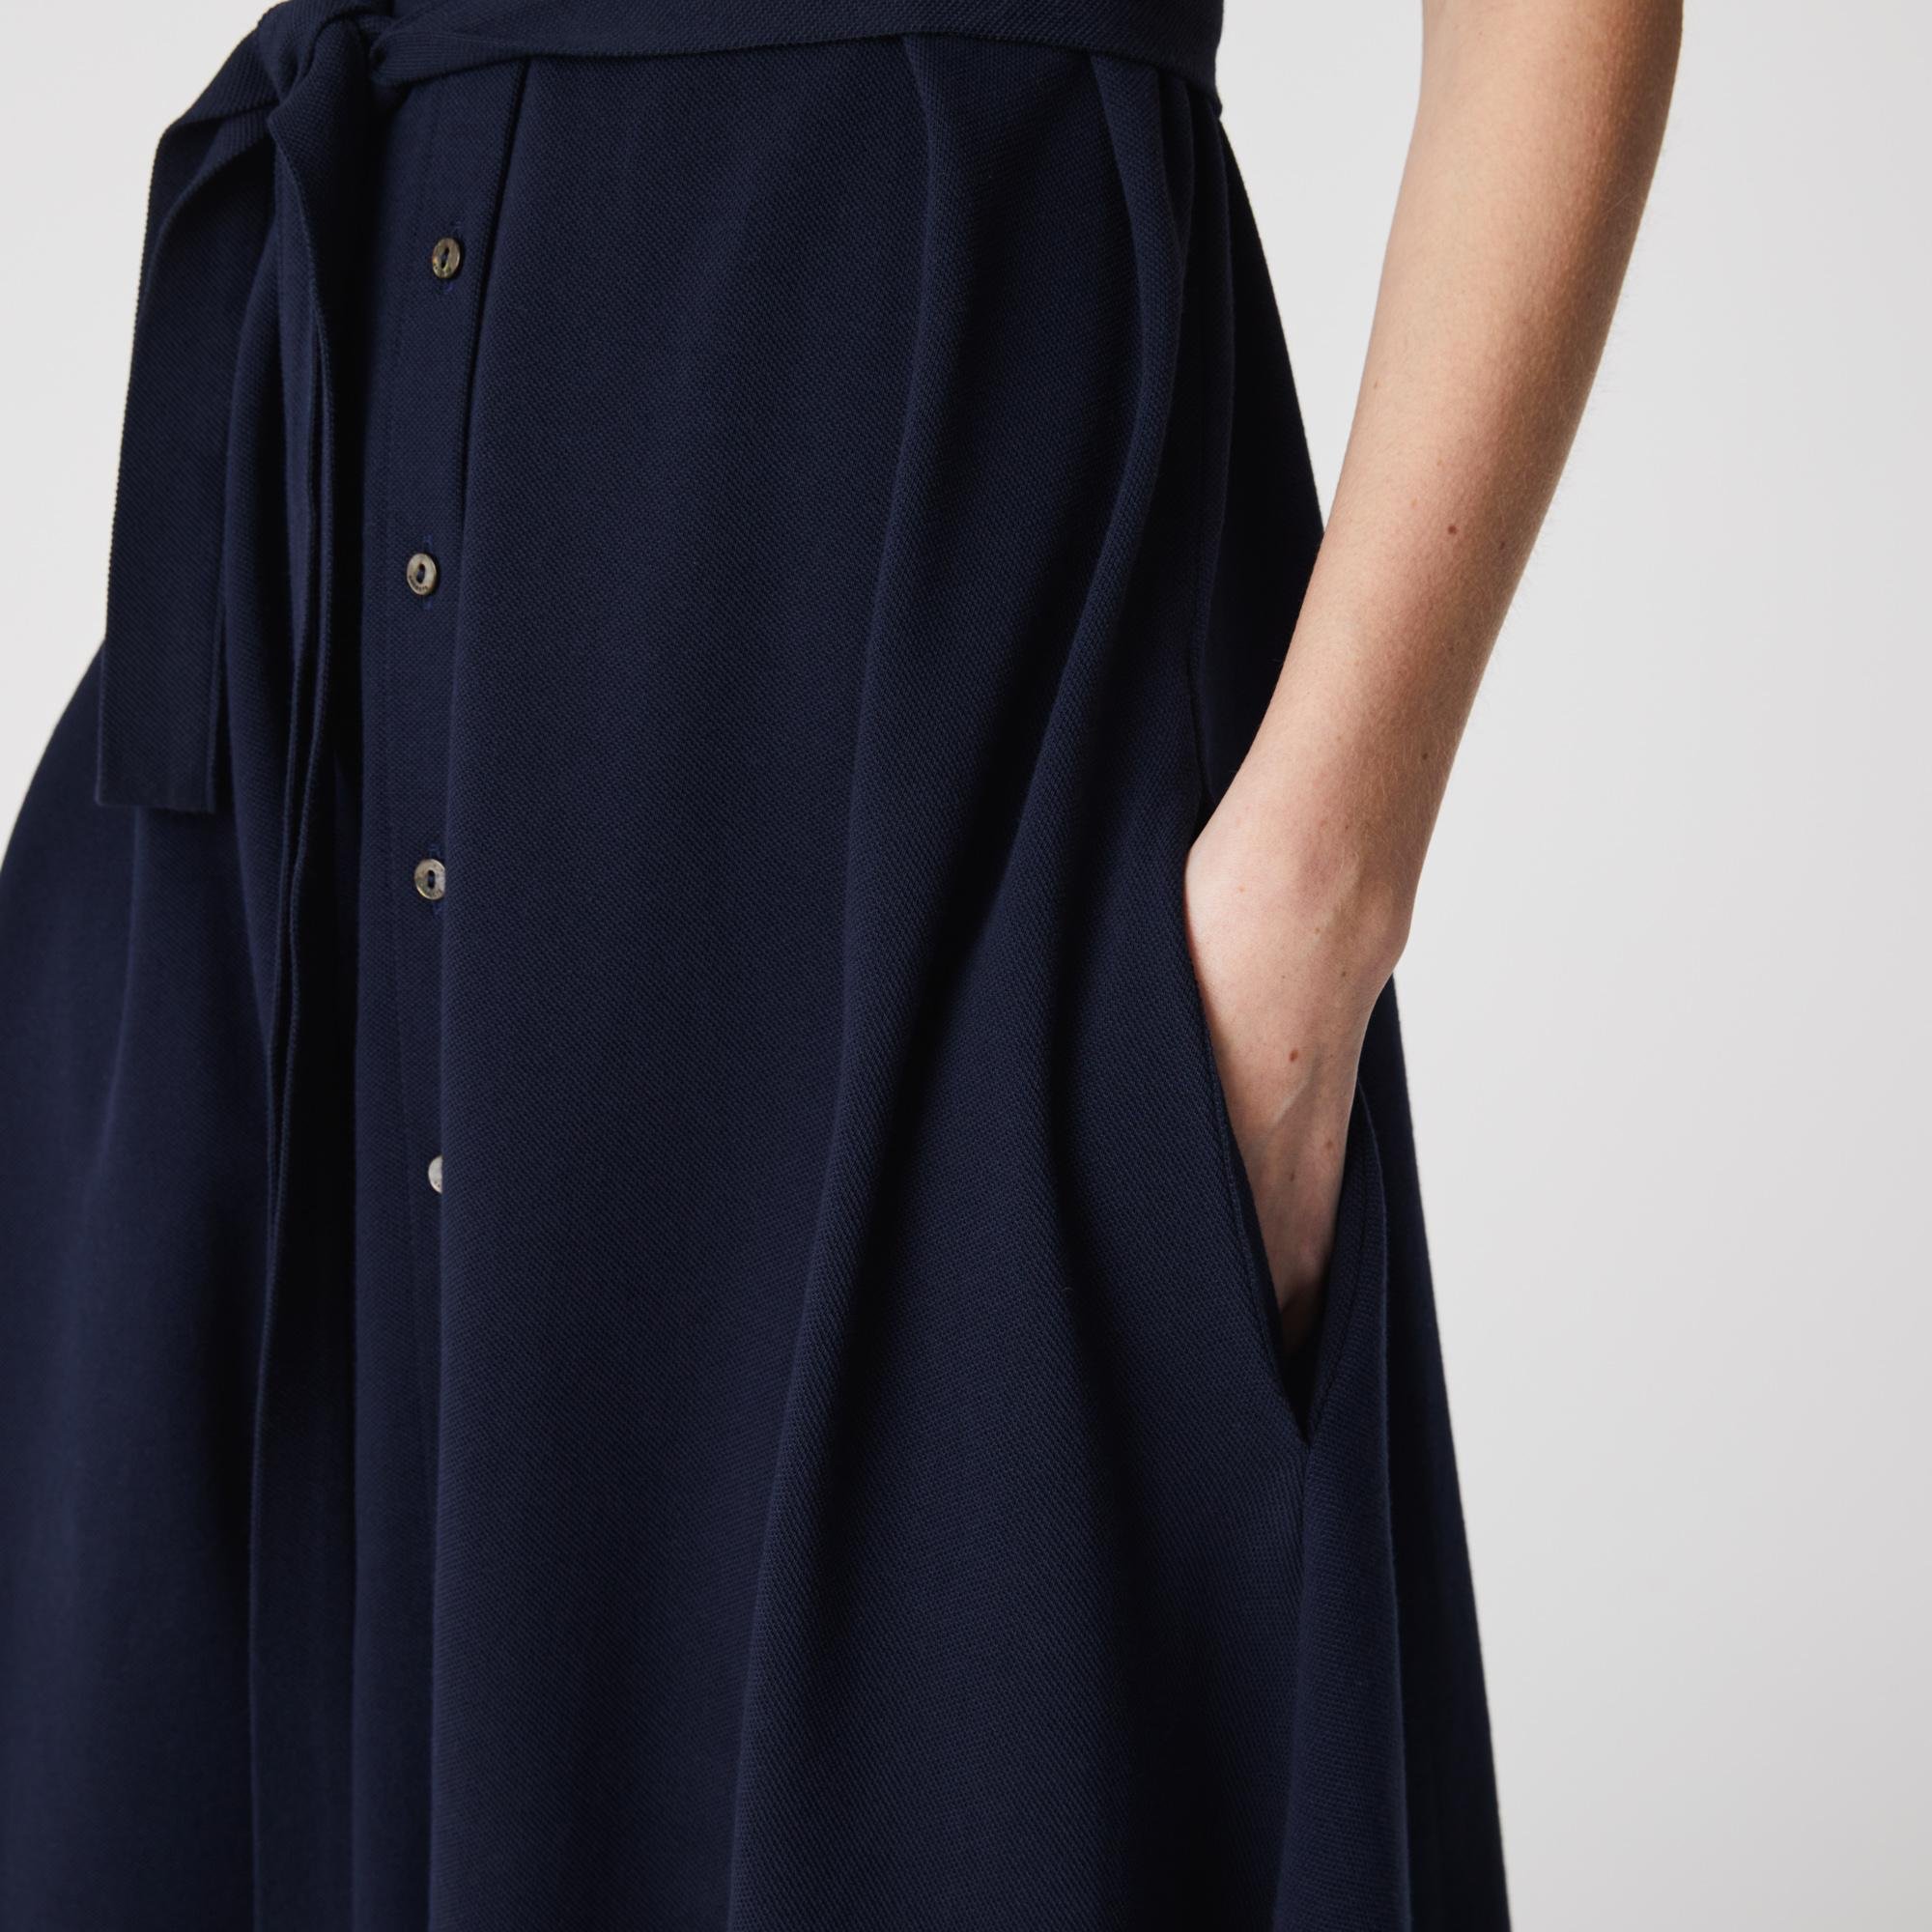 Lacoste Kadın Loose Fit Kısa Kollu Gömlek Yaka Lacivert Elbise